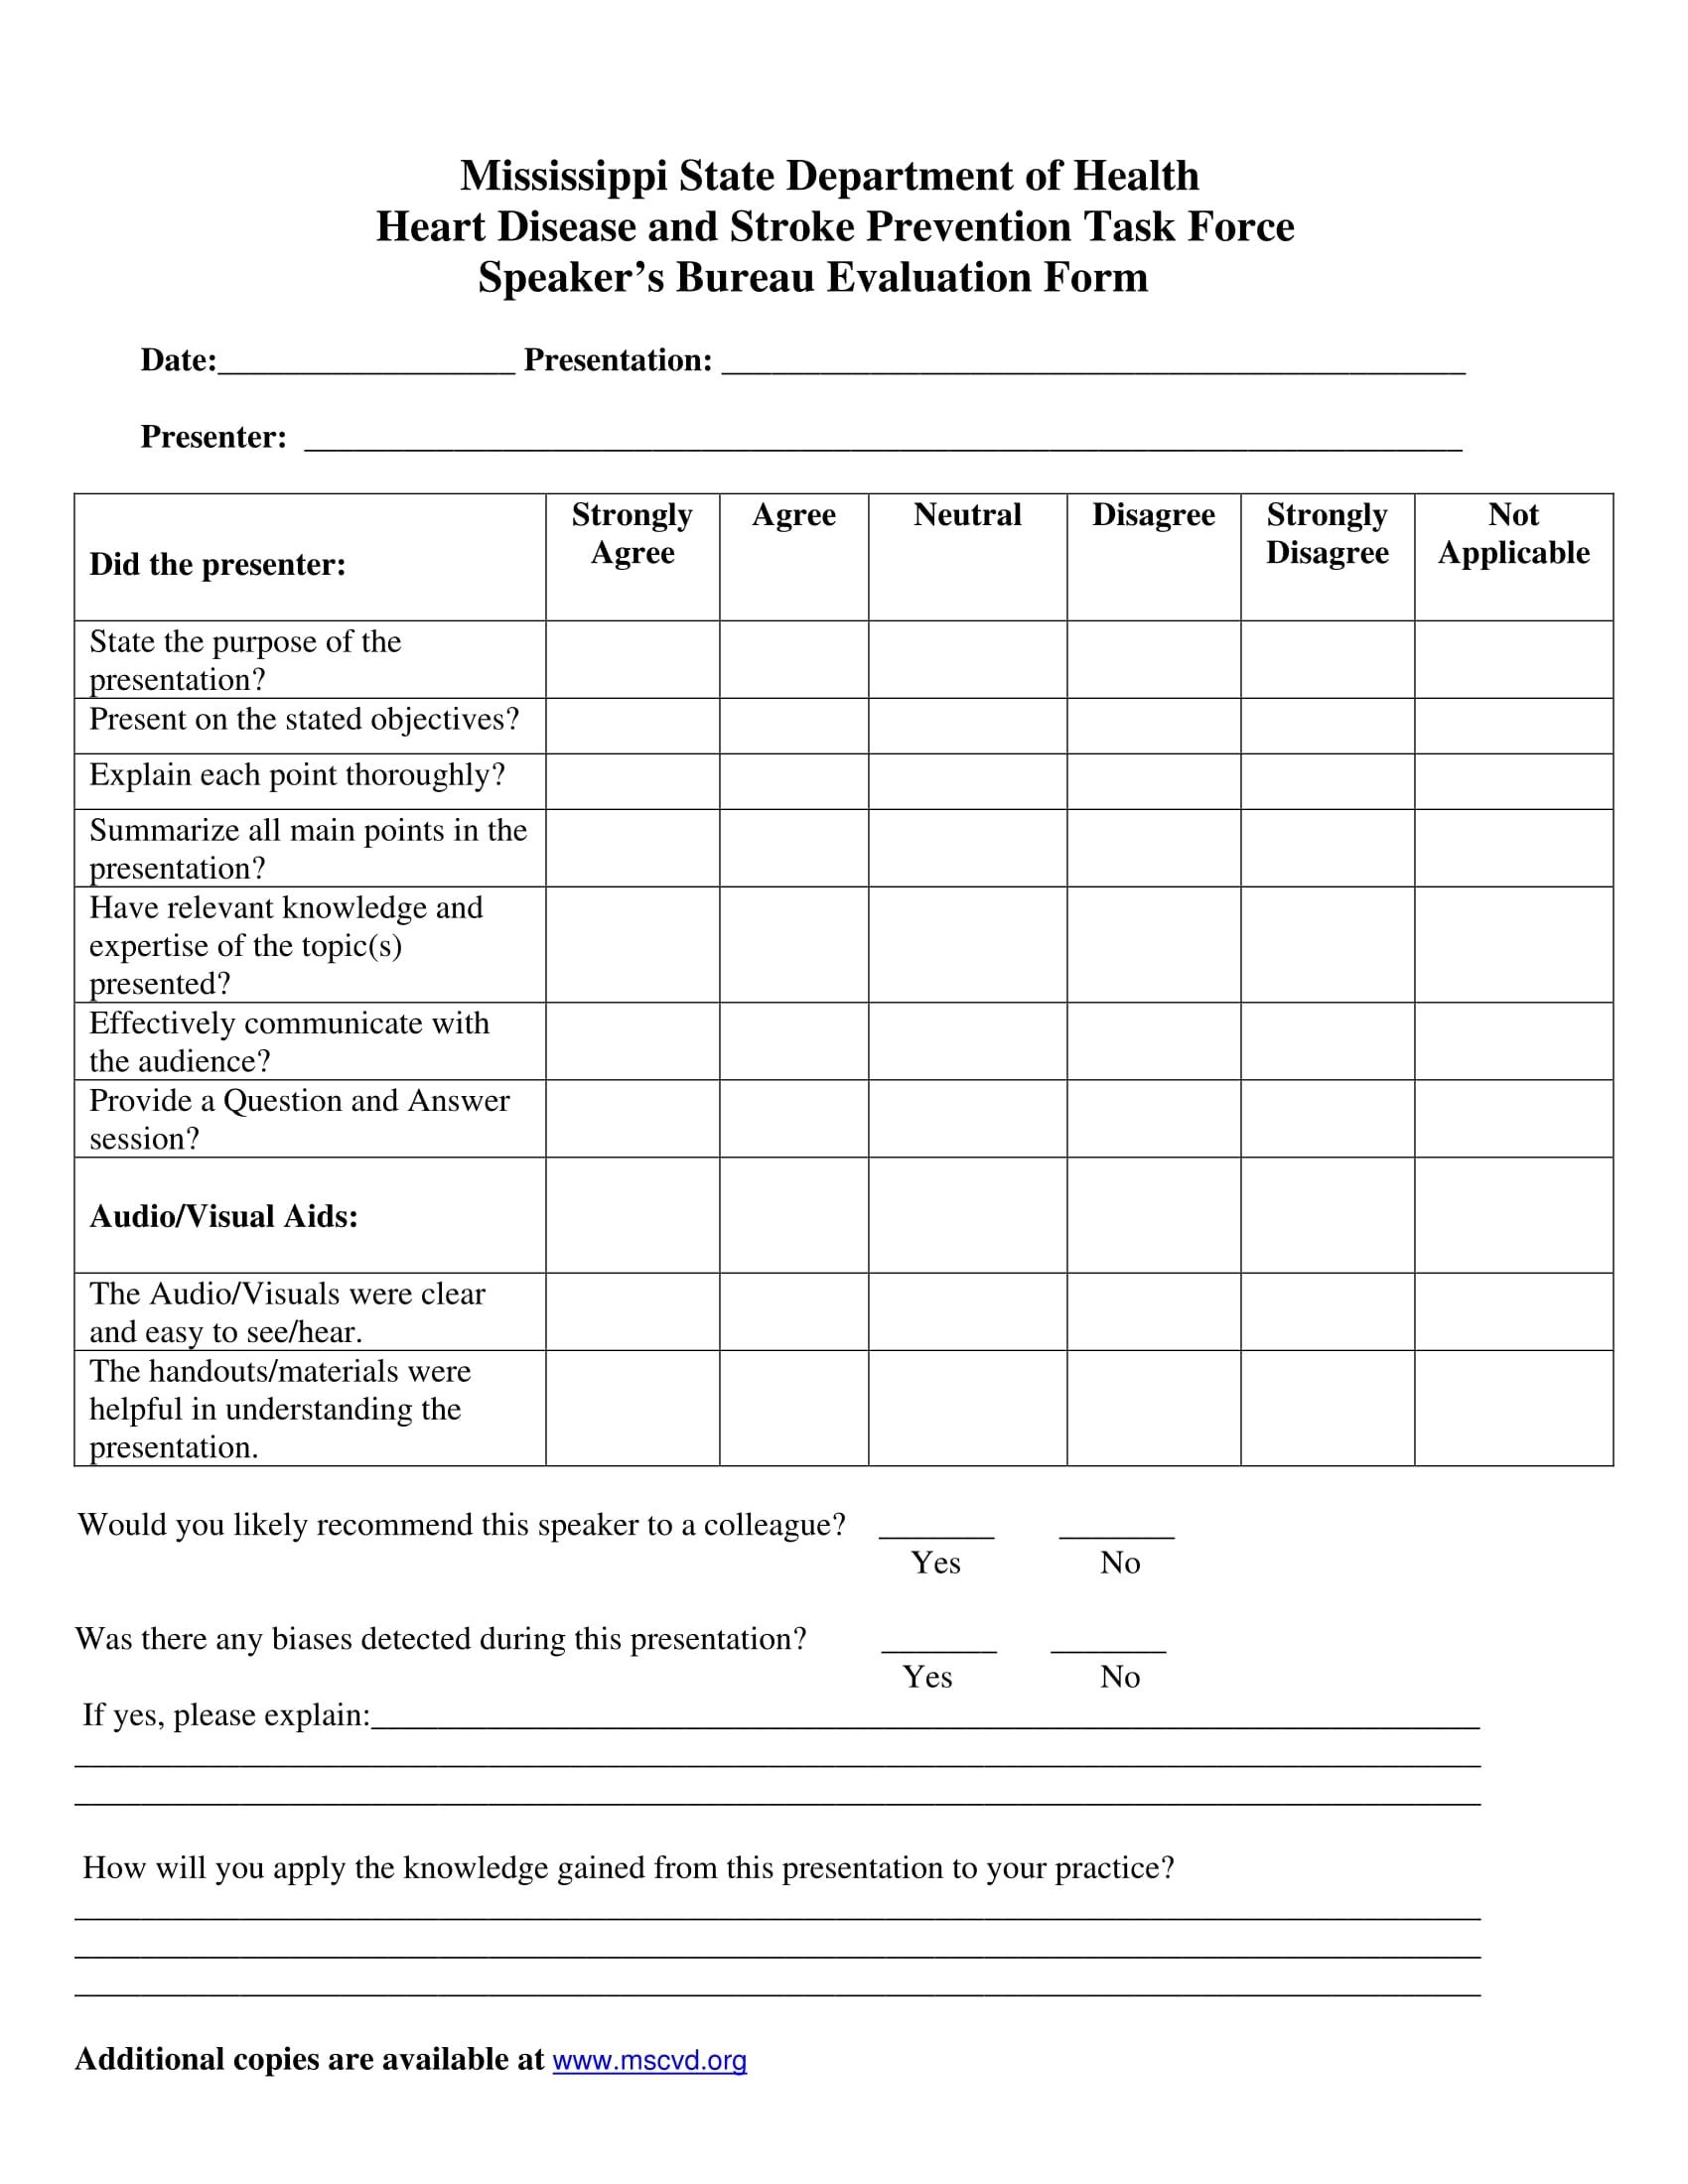 speaker’s bureau evaluation form 1